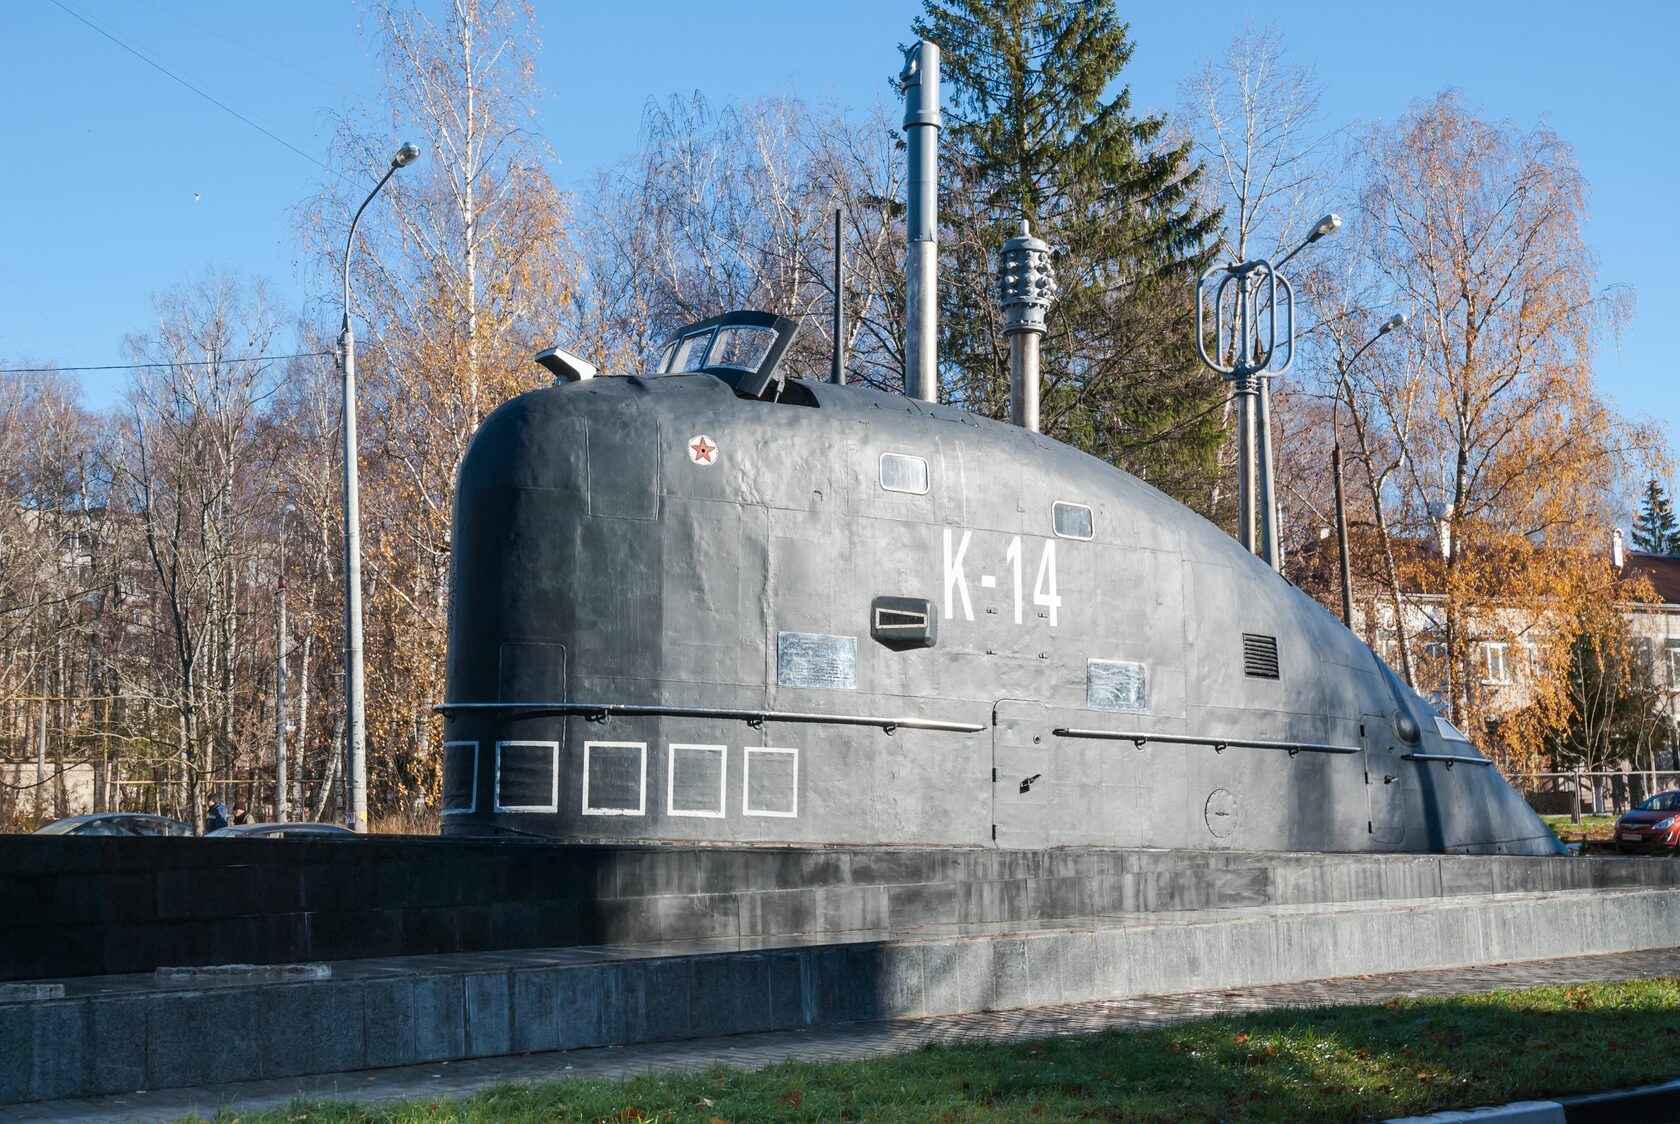 Памятник подводной лодке к-14 в Обнинске